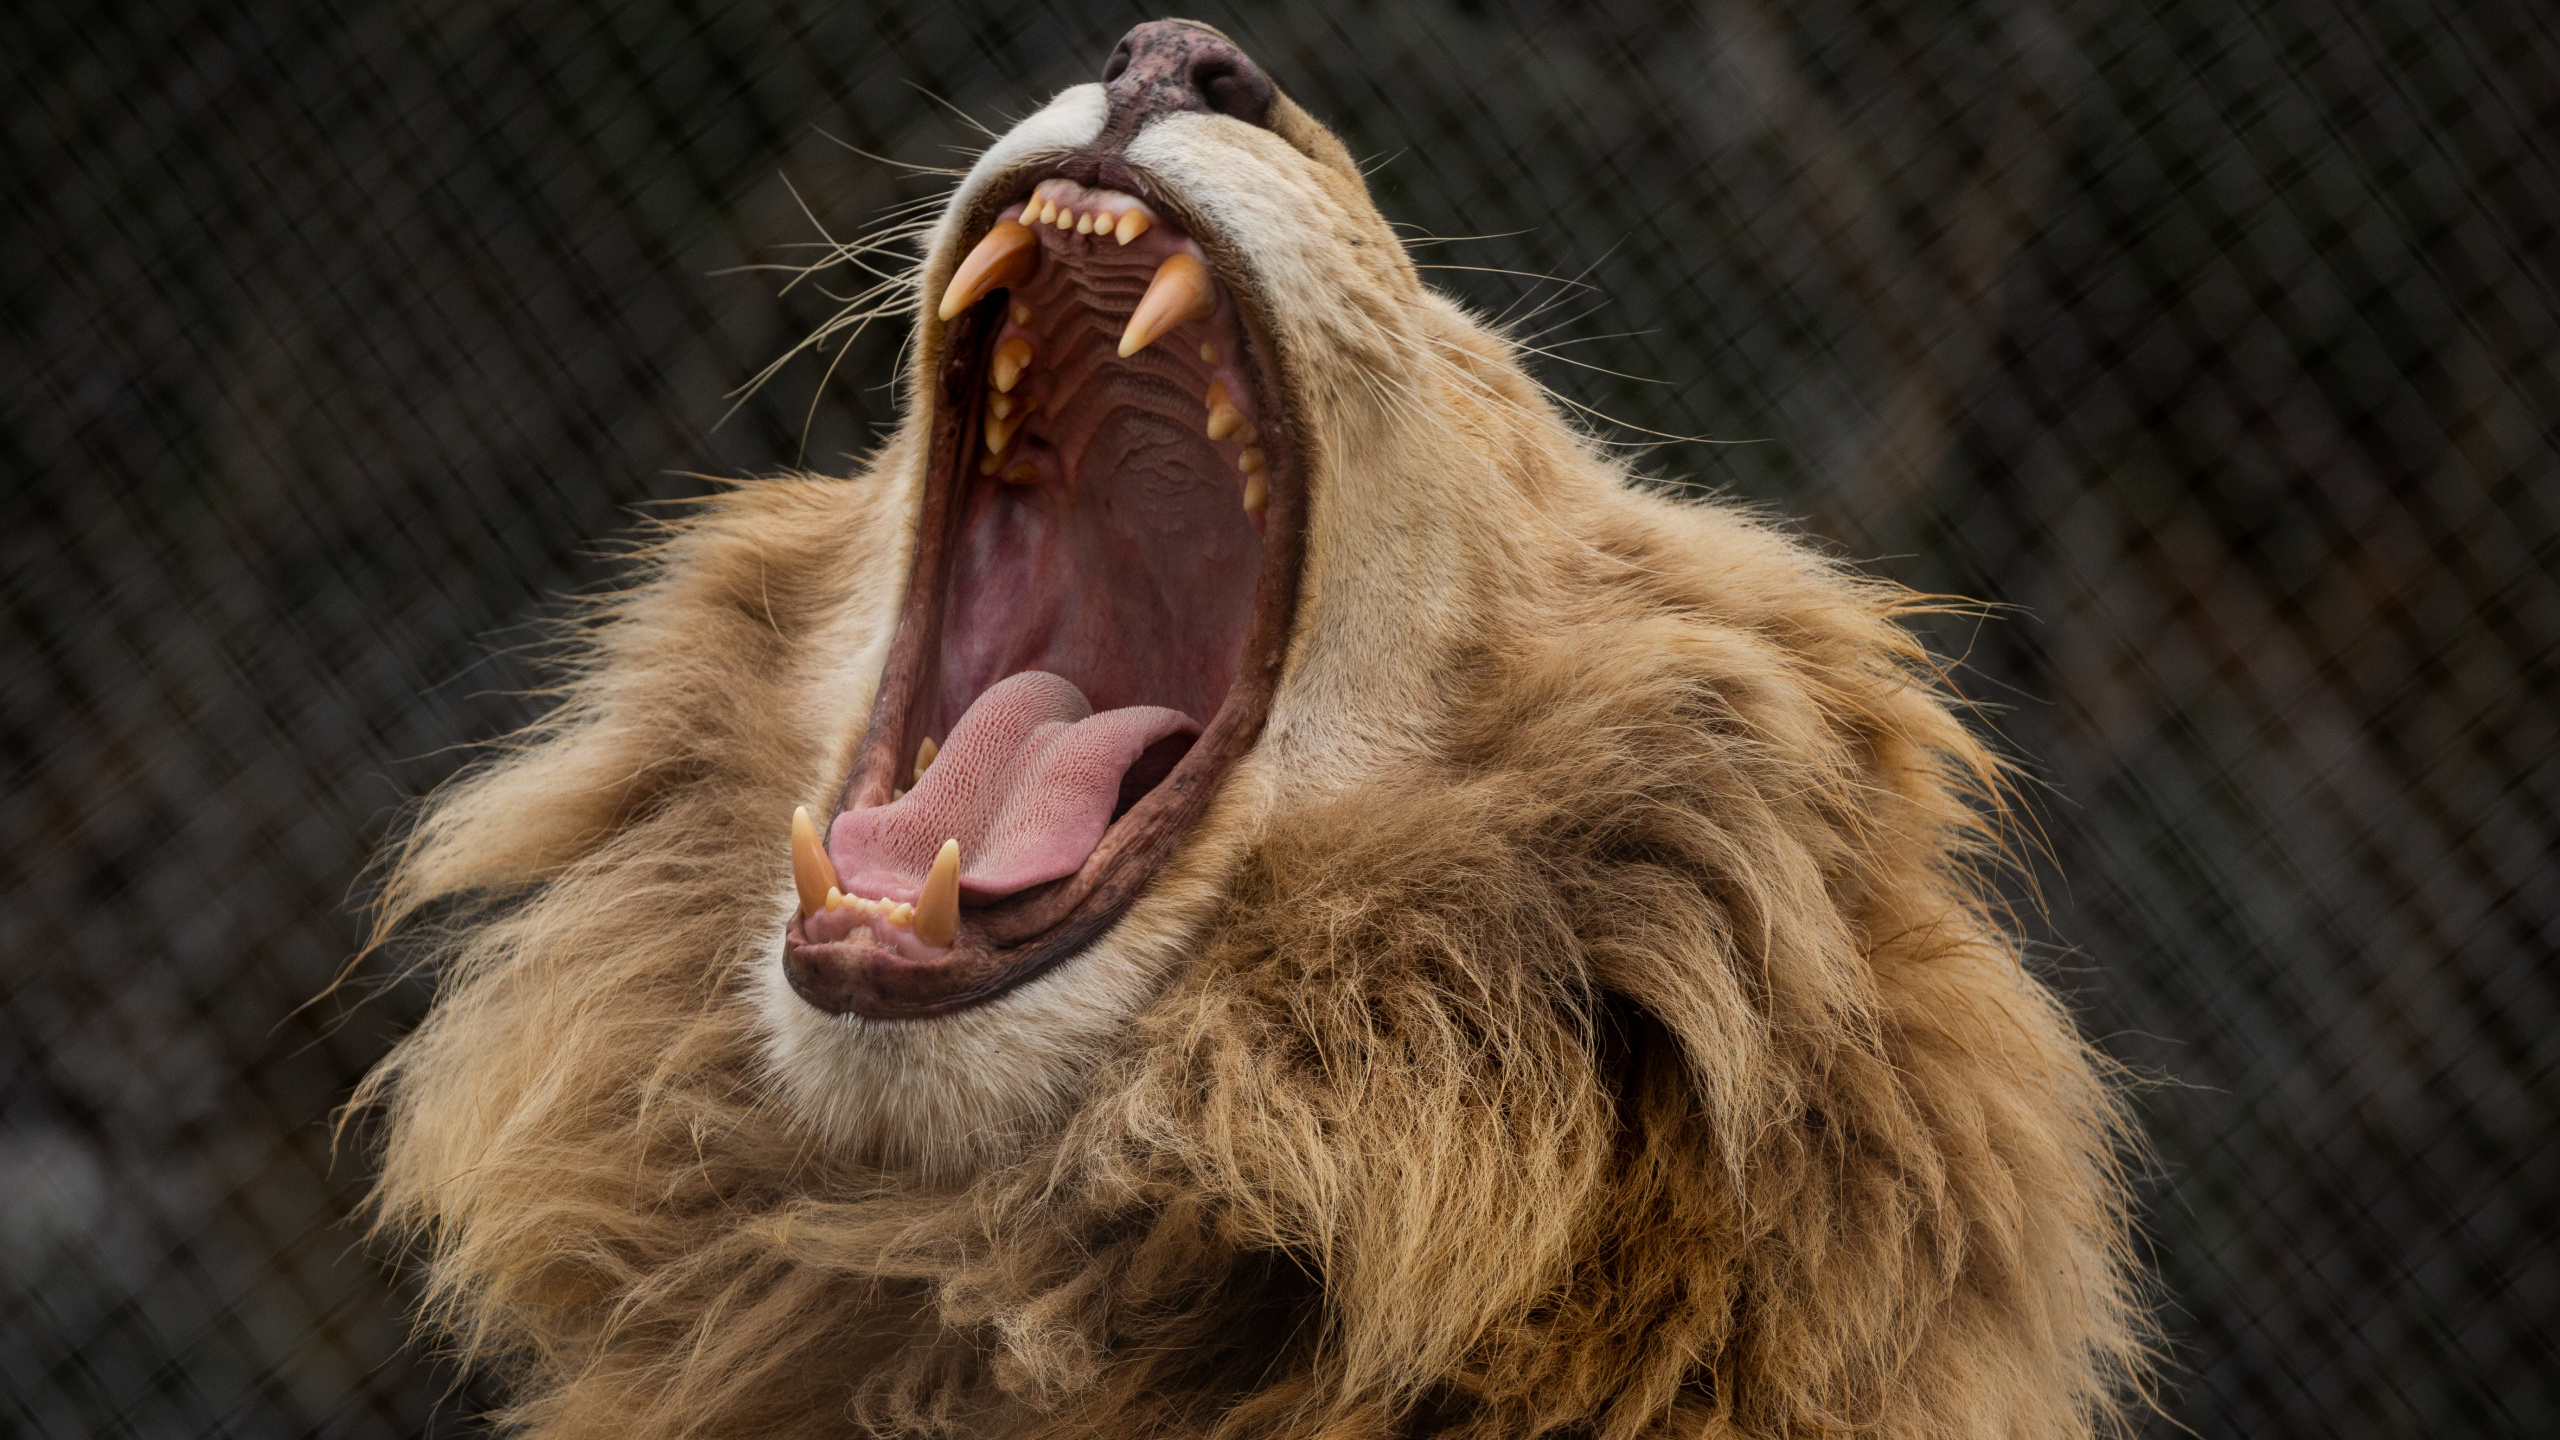 狮子, 猫科, 面部表情, 打个哈欠, 野生动物 壁纸 2560x1440 允许